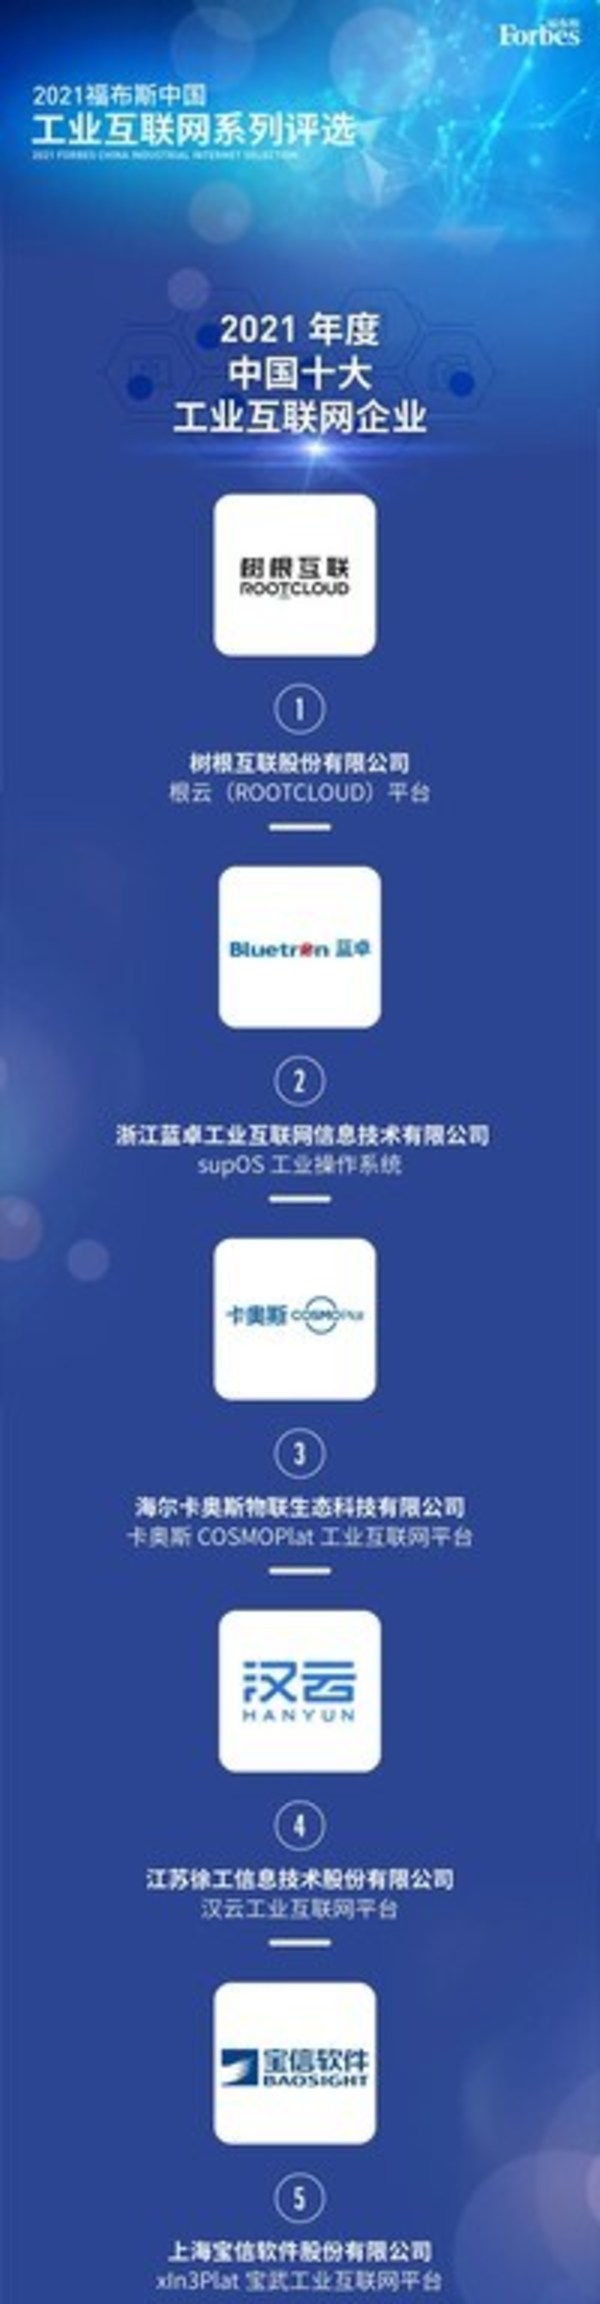 supOS行業第二 藍卓入選2021福布斯中國十大工業互聯網企業